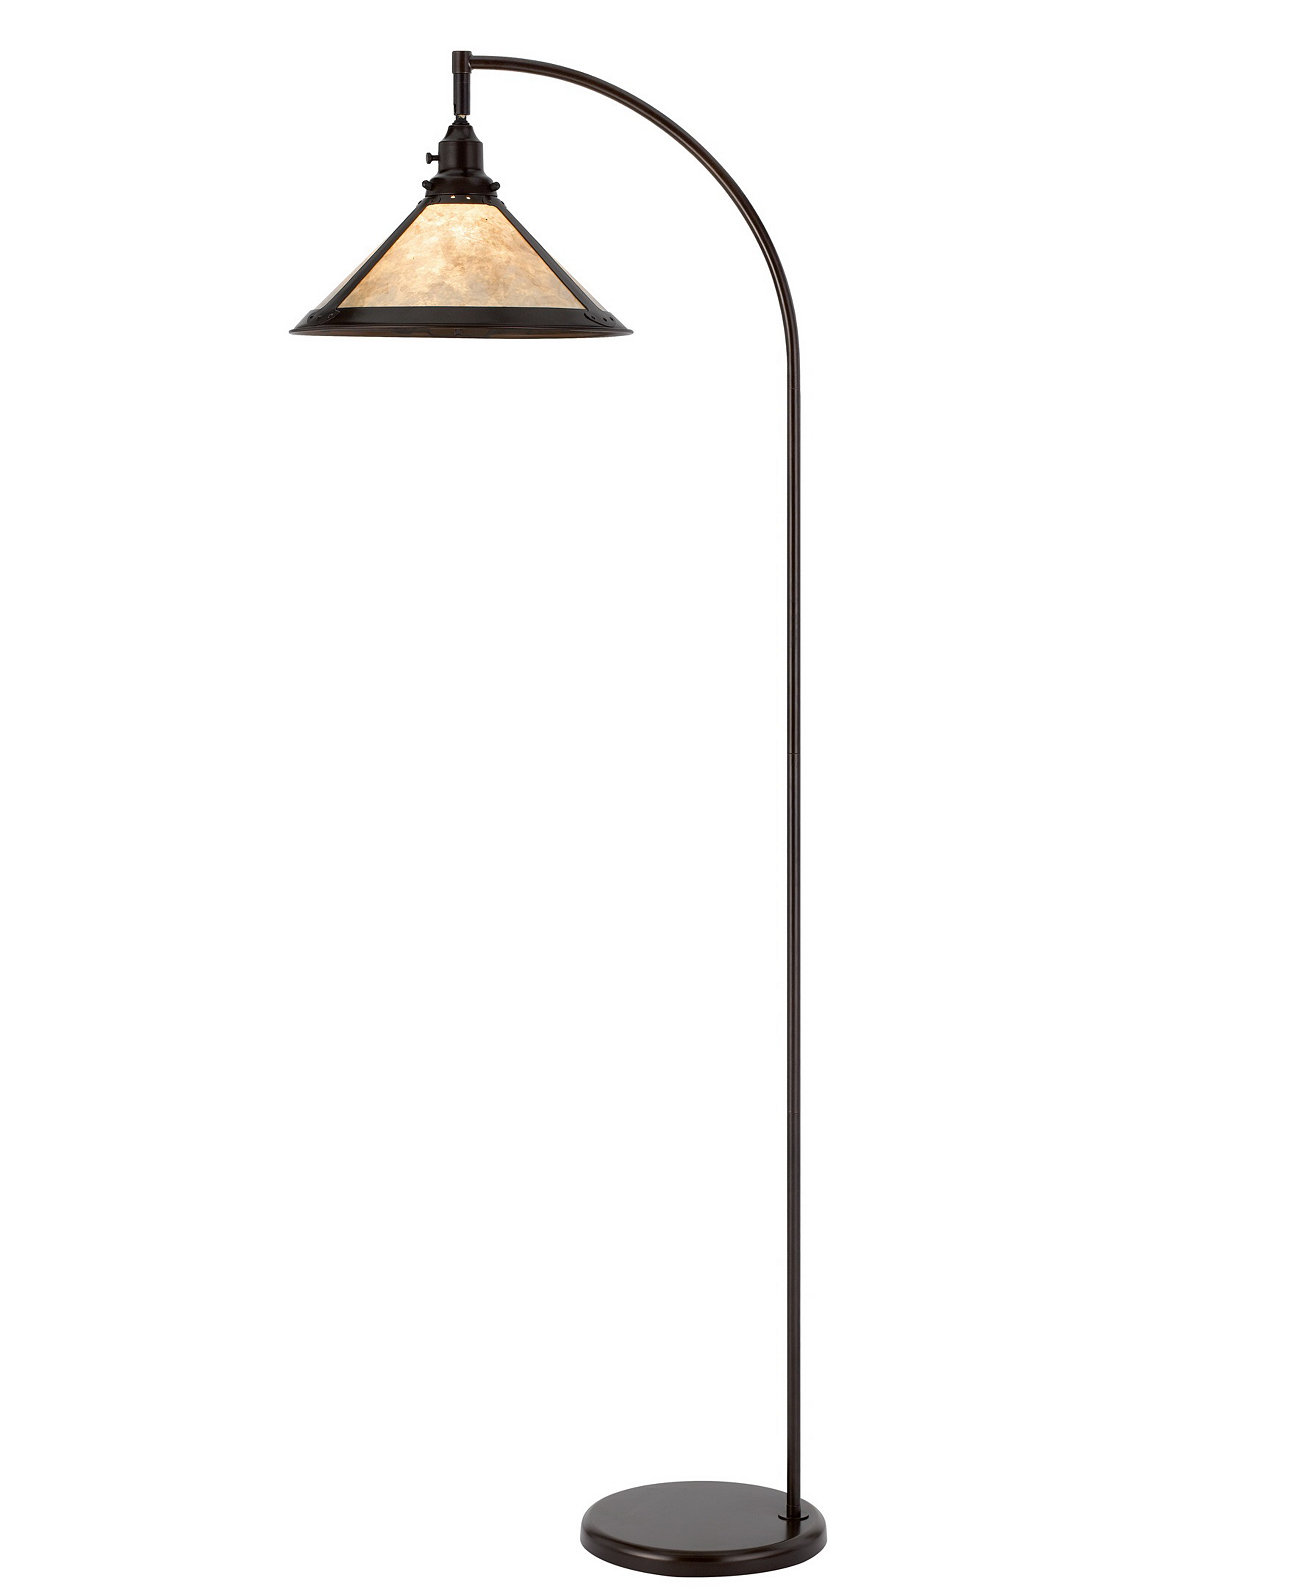 Торшер Downbridge высотой 65 дюймов с металлической дугой и абажуром Cal Lighting